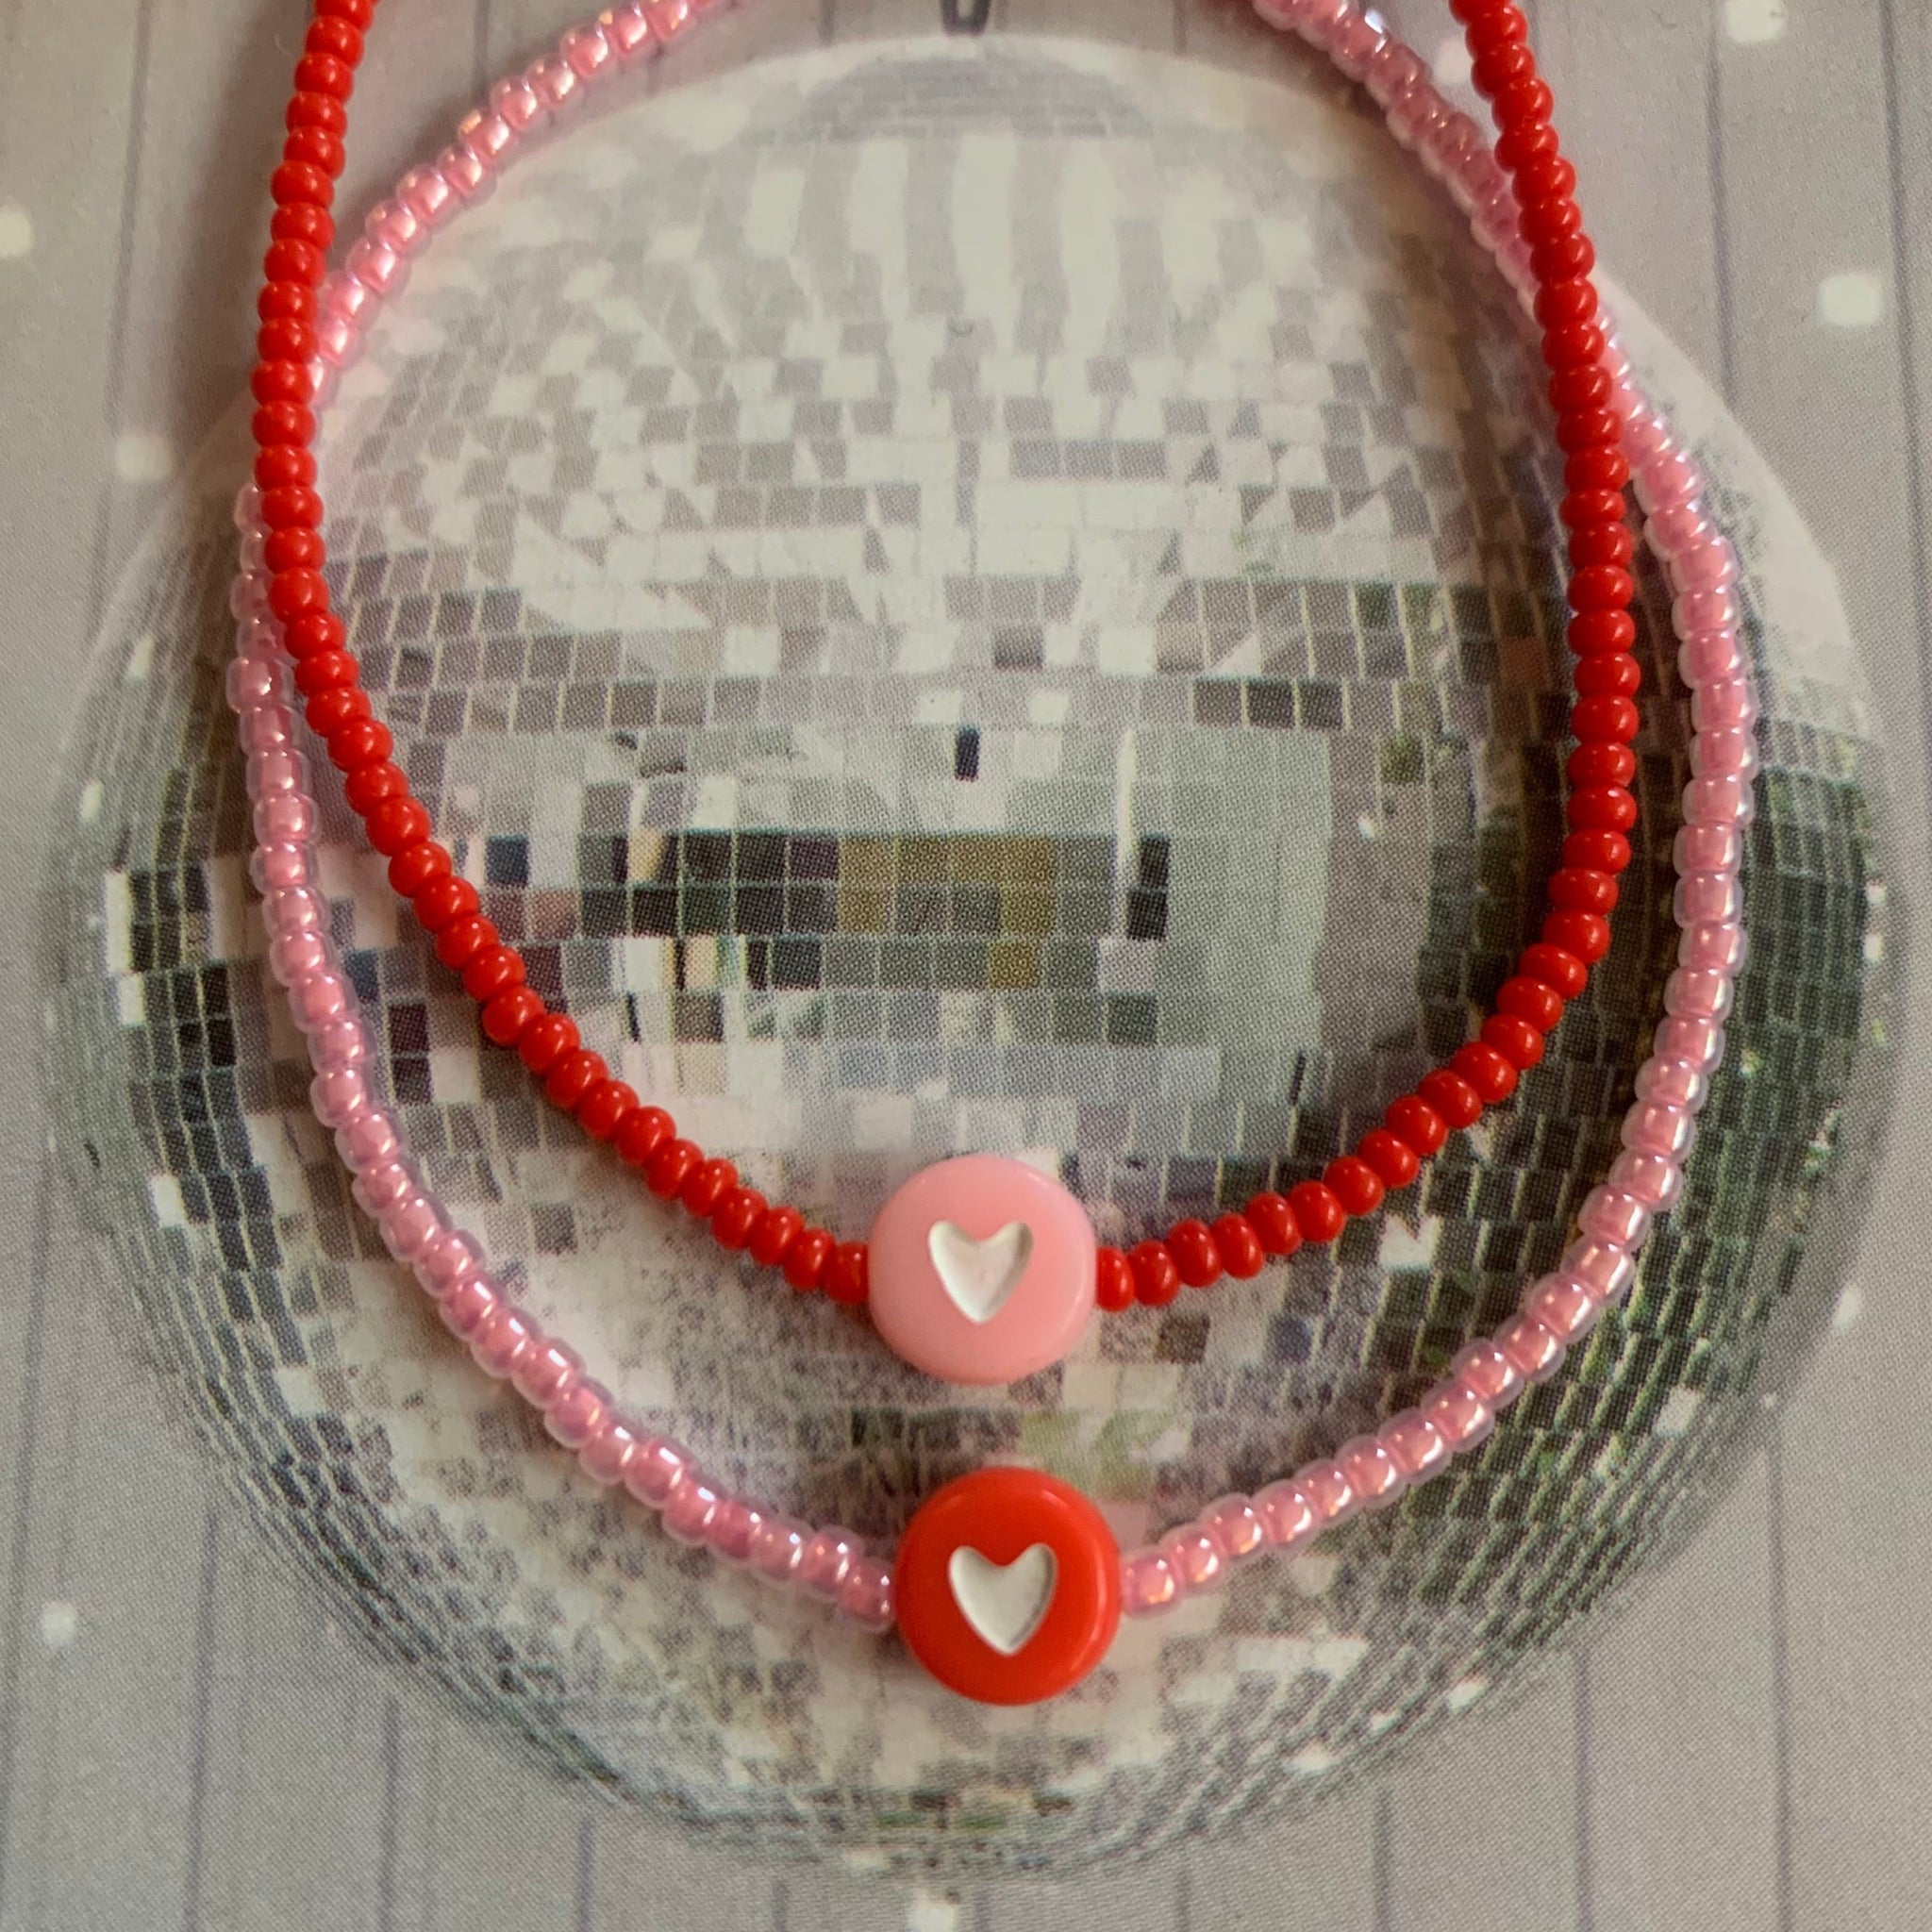 Heart beaded bracelet for Valentine's day 